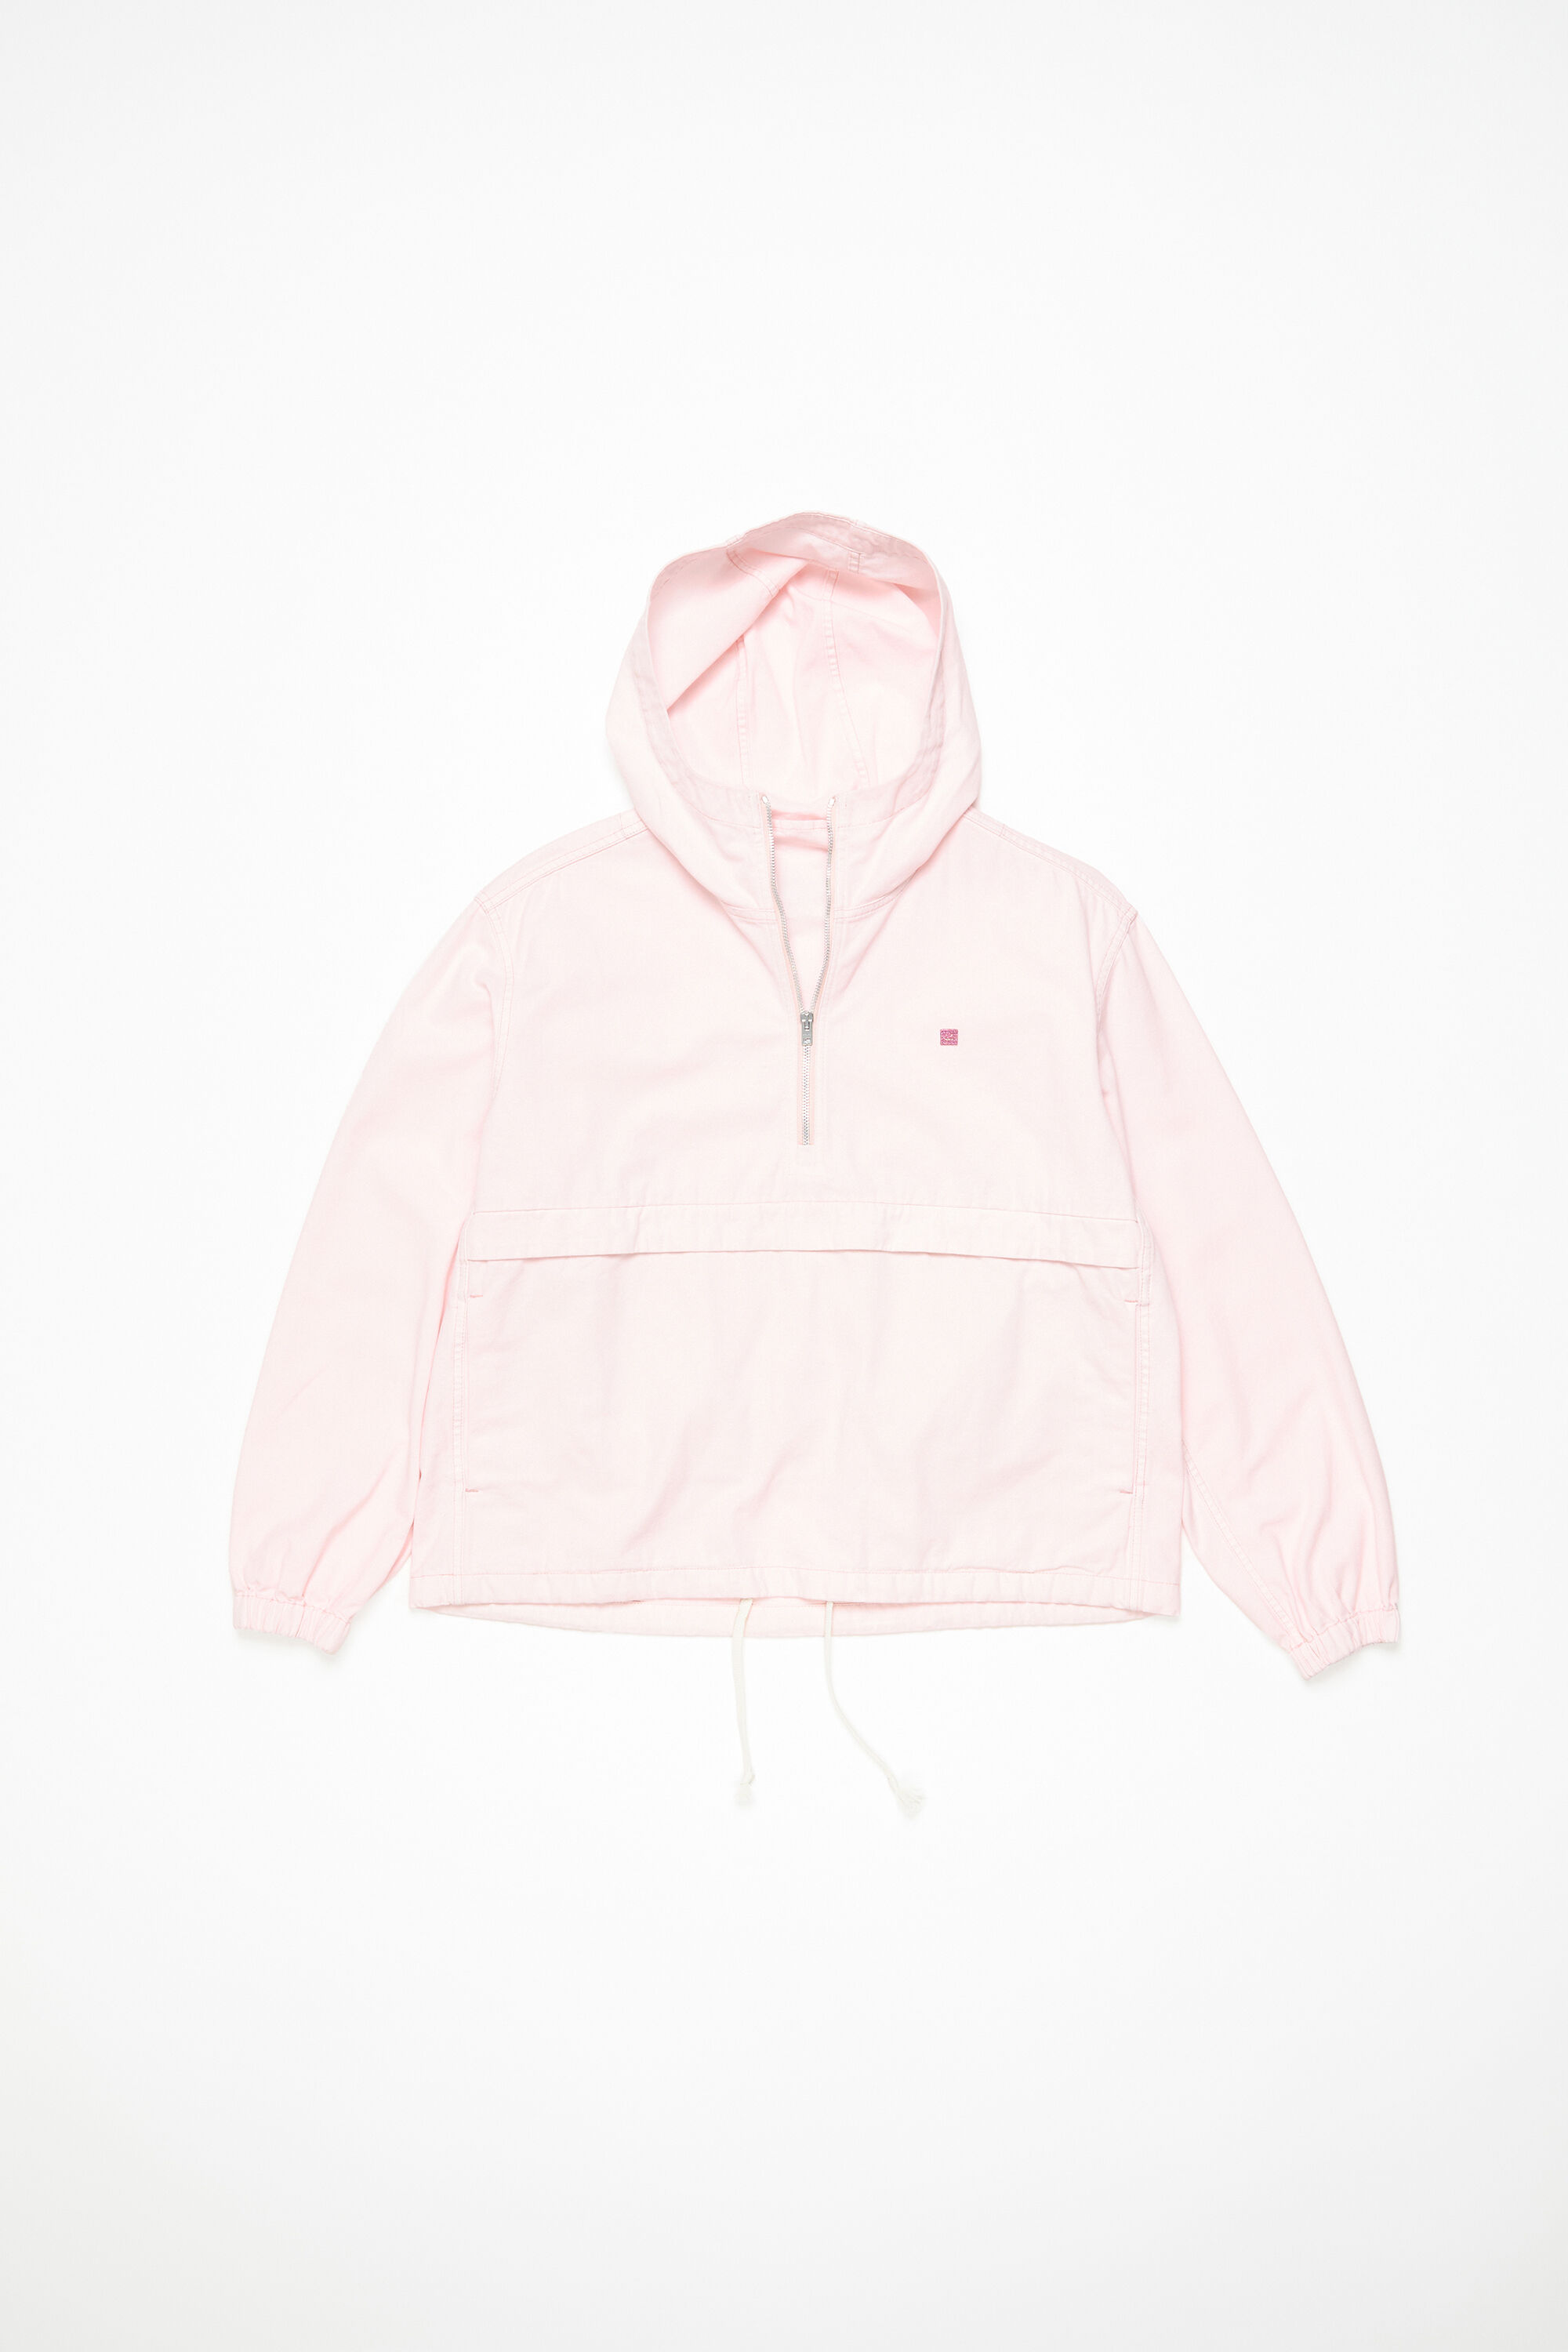 Acne Studios - Hooded jacket - Pink